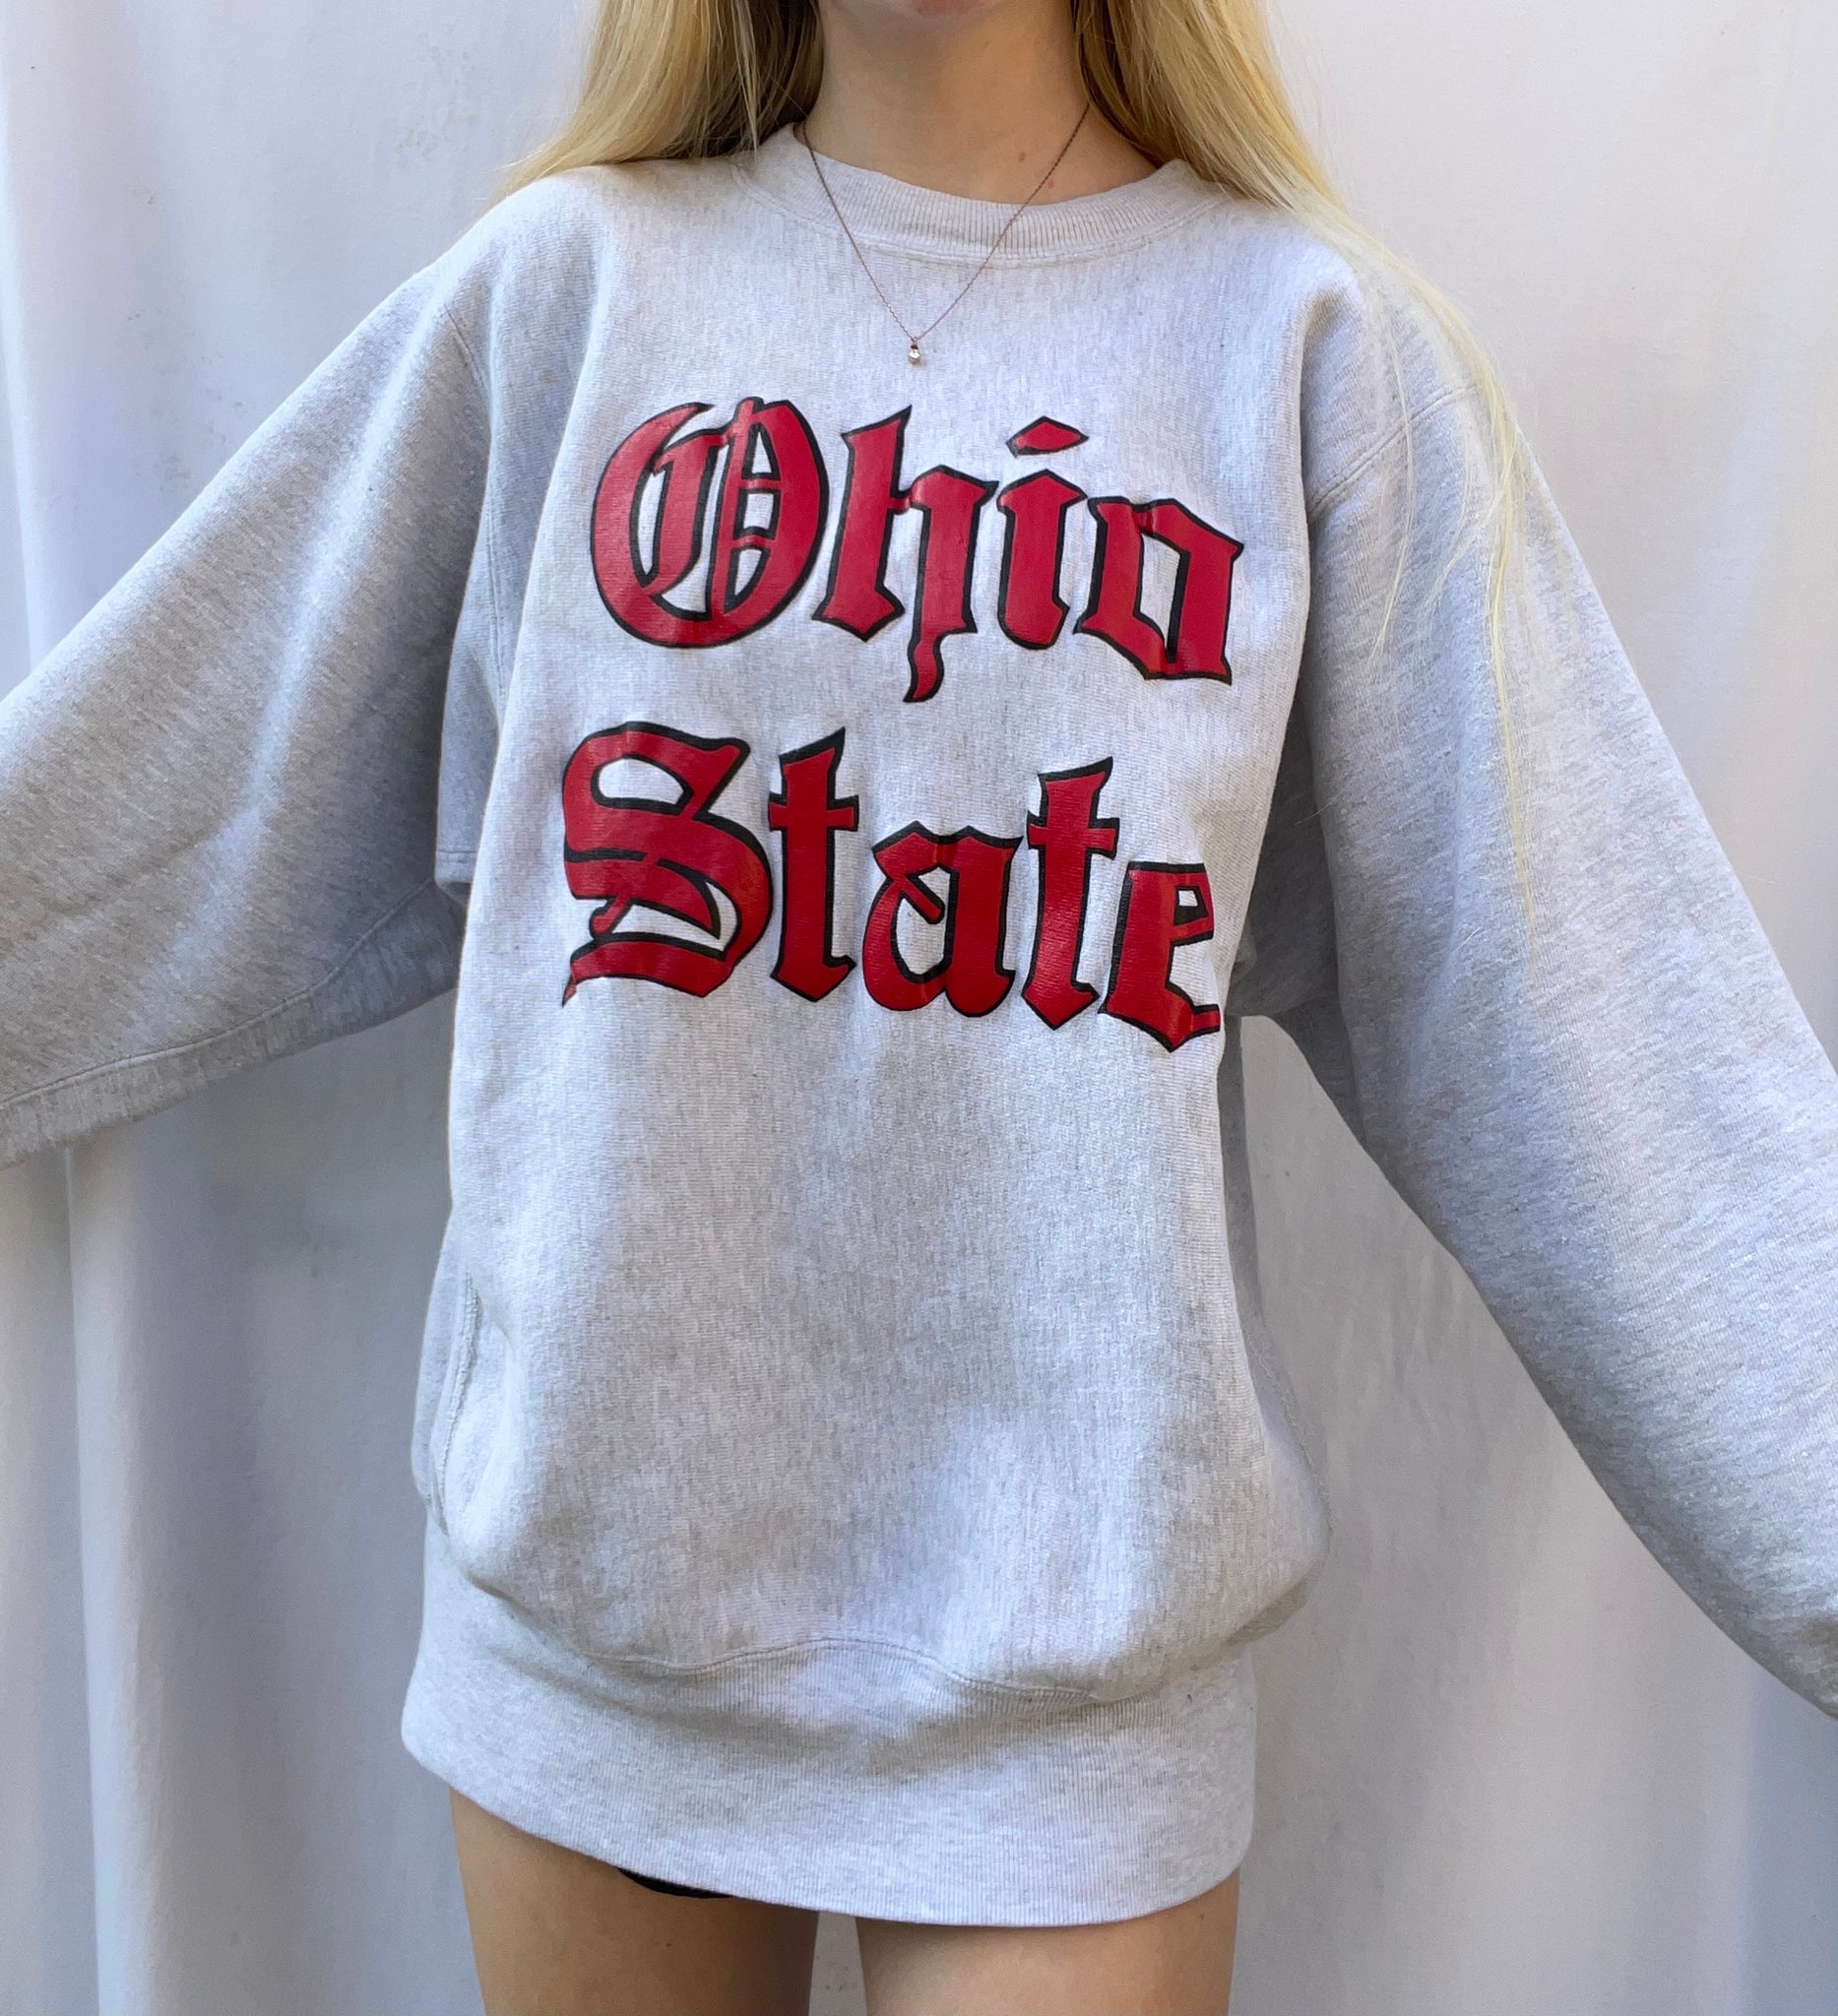 M) Vintage Ohio State Champion Sweatshirt (see –